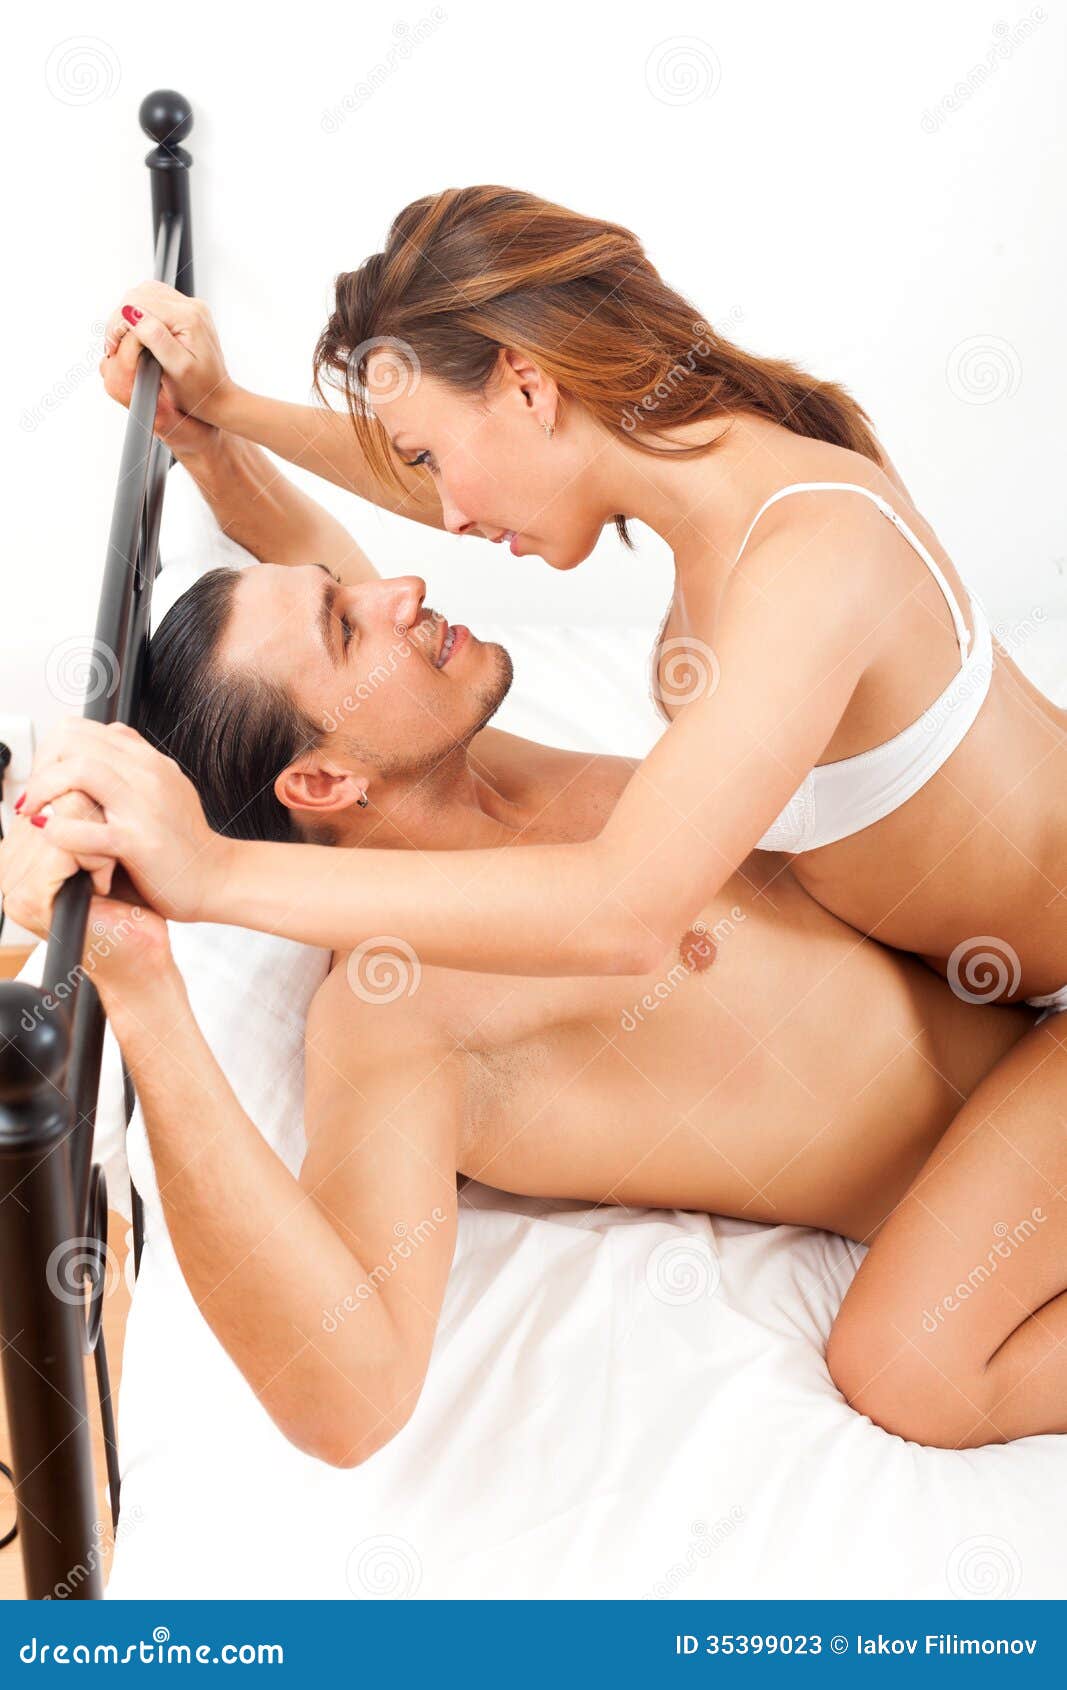 Women Having Homemade Sex 49